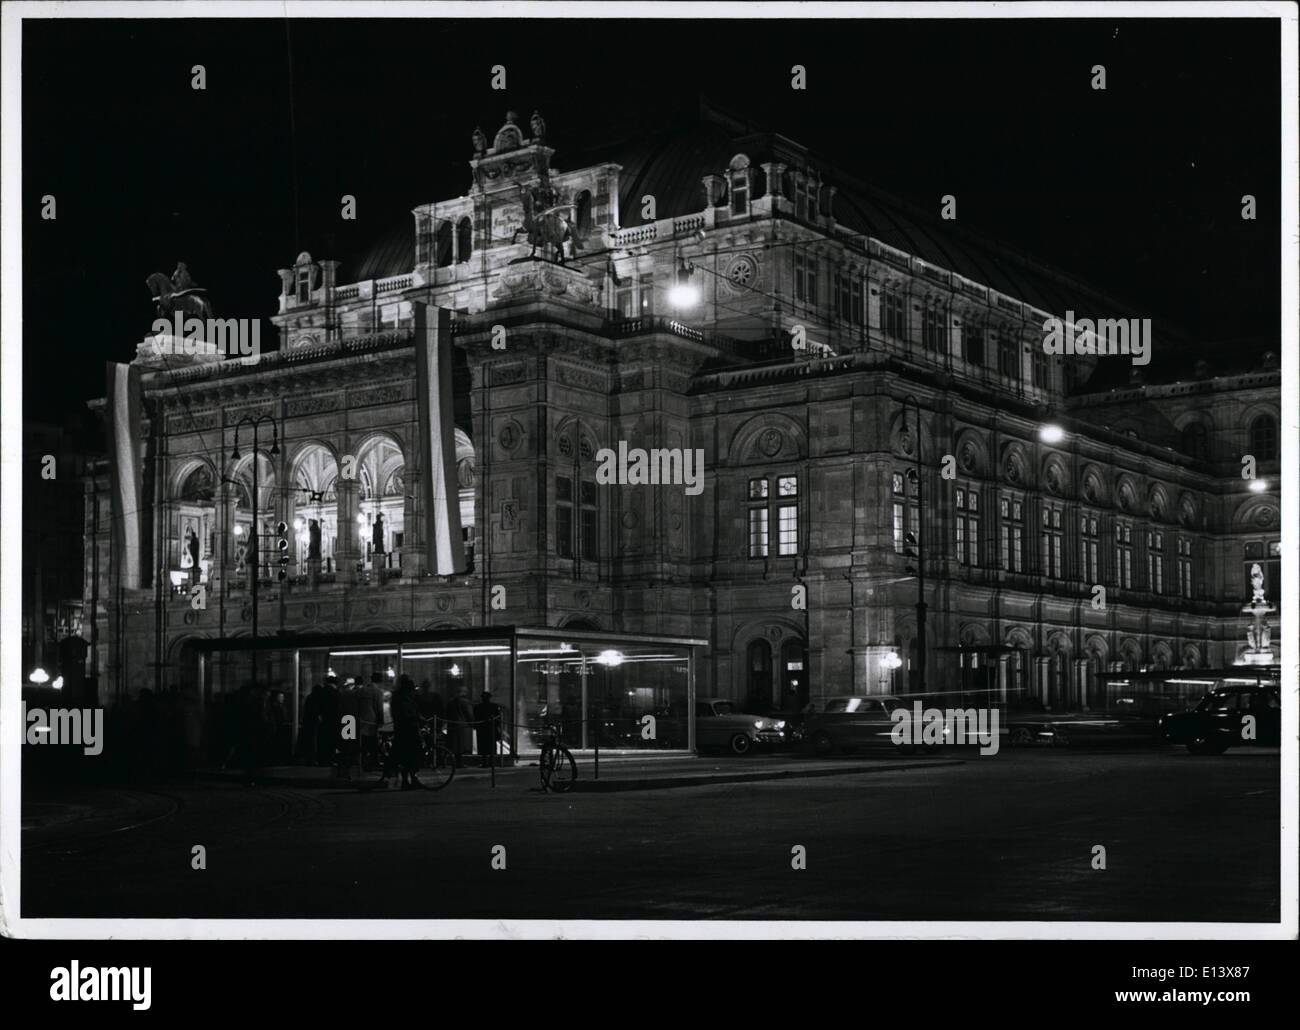 27 mars 2012 - Vienne - Autriche - Autriche Osterreich Wien, Stattsoper, Opera House.UM Banque D'Images